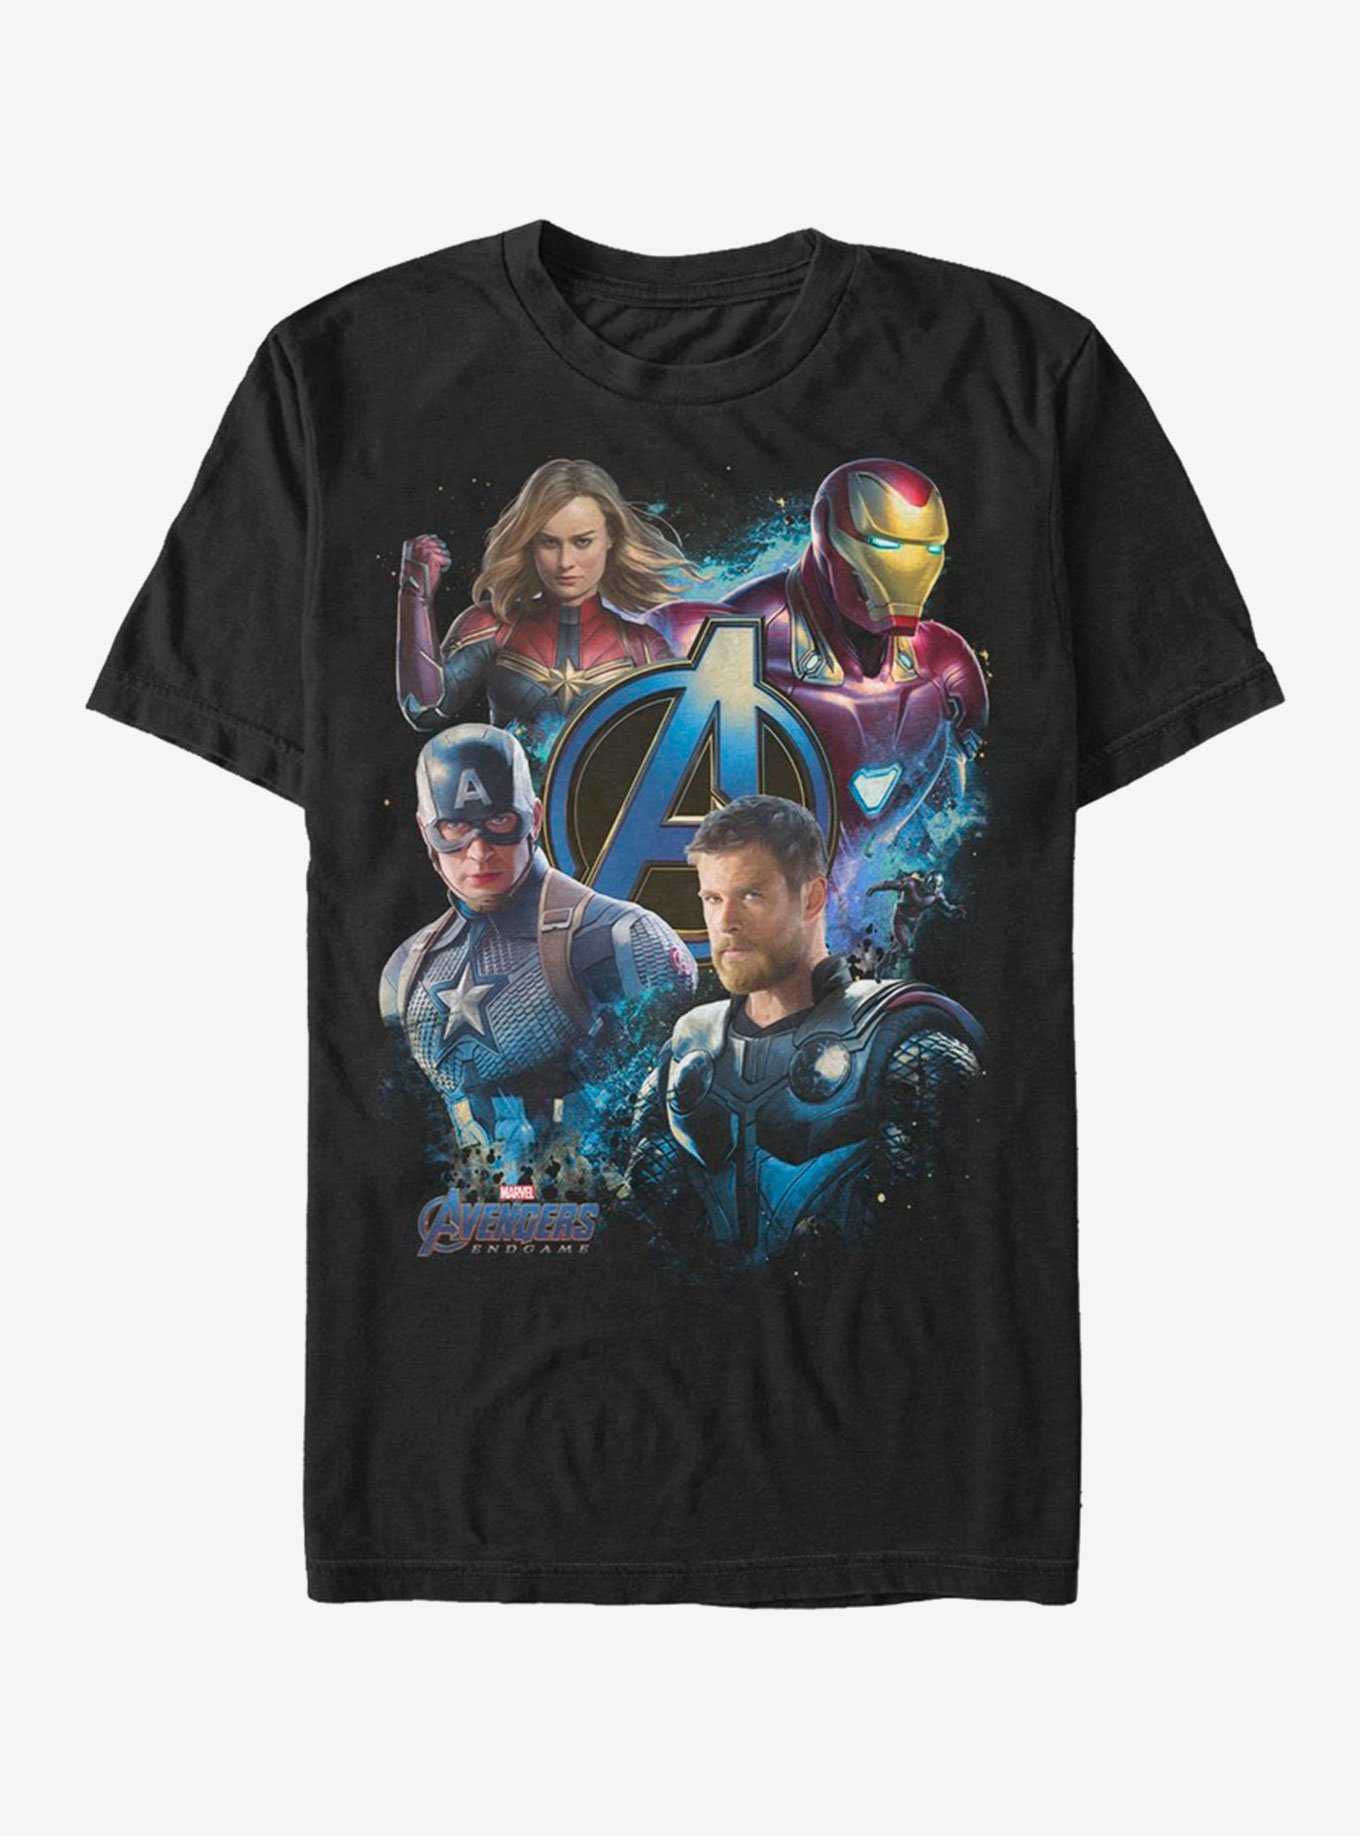 Marvel Avengers Endgame Strong Team T-Shirt, , hi-res